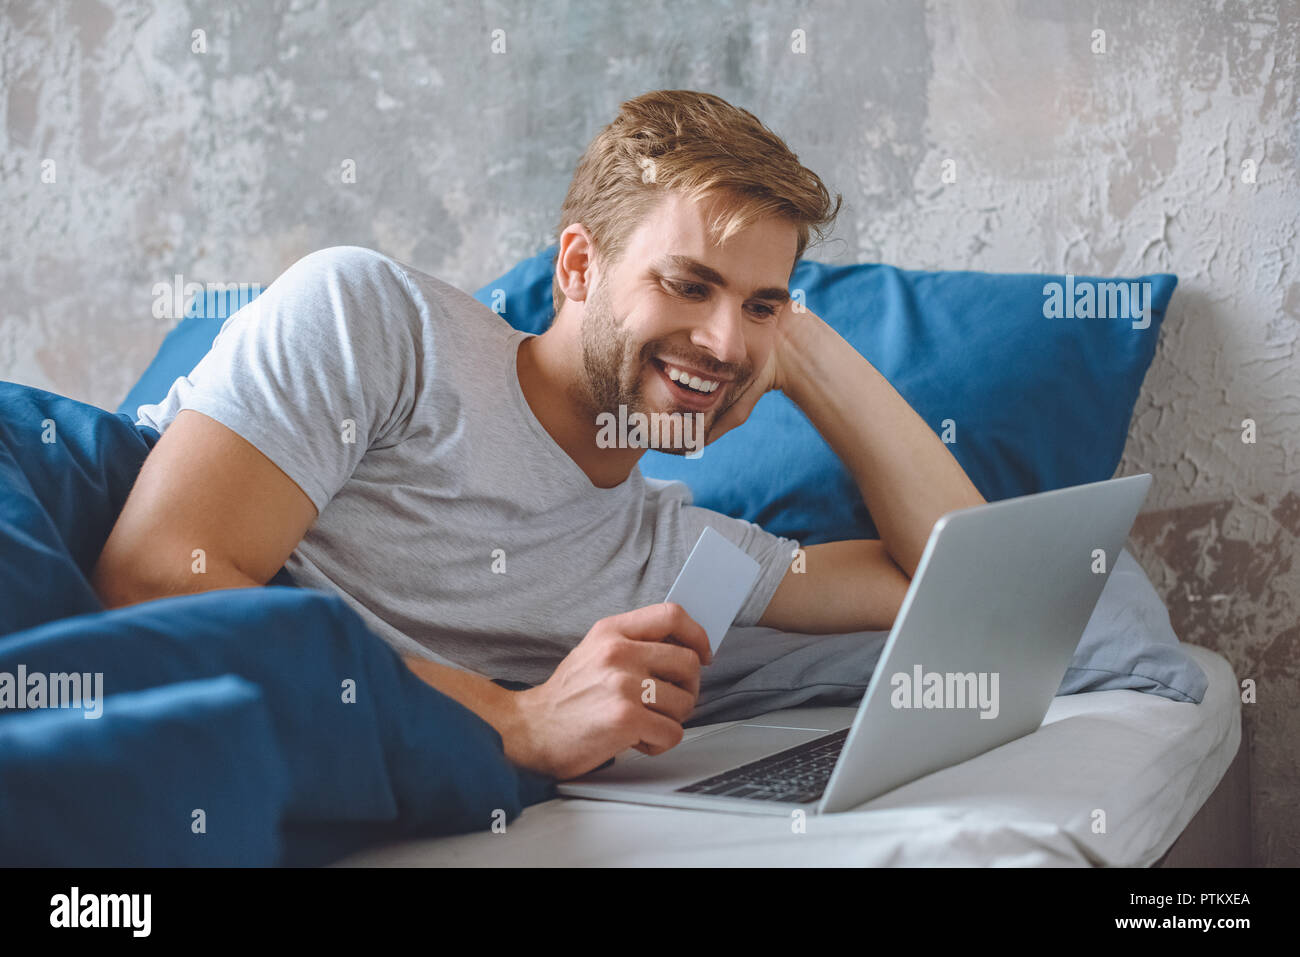 Lächelnden jungen Mann im Bett mit Kreditkarte, online shopping auf Laptop Stockfoto